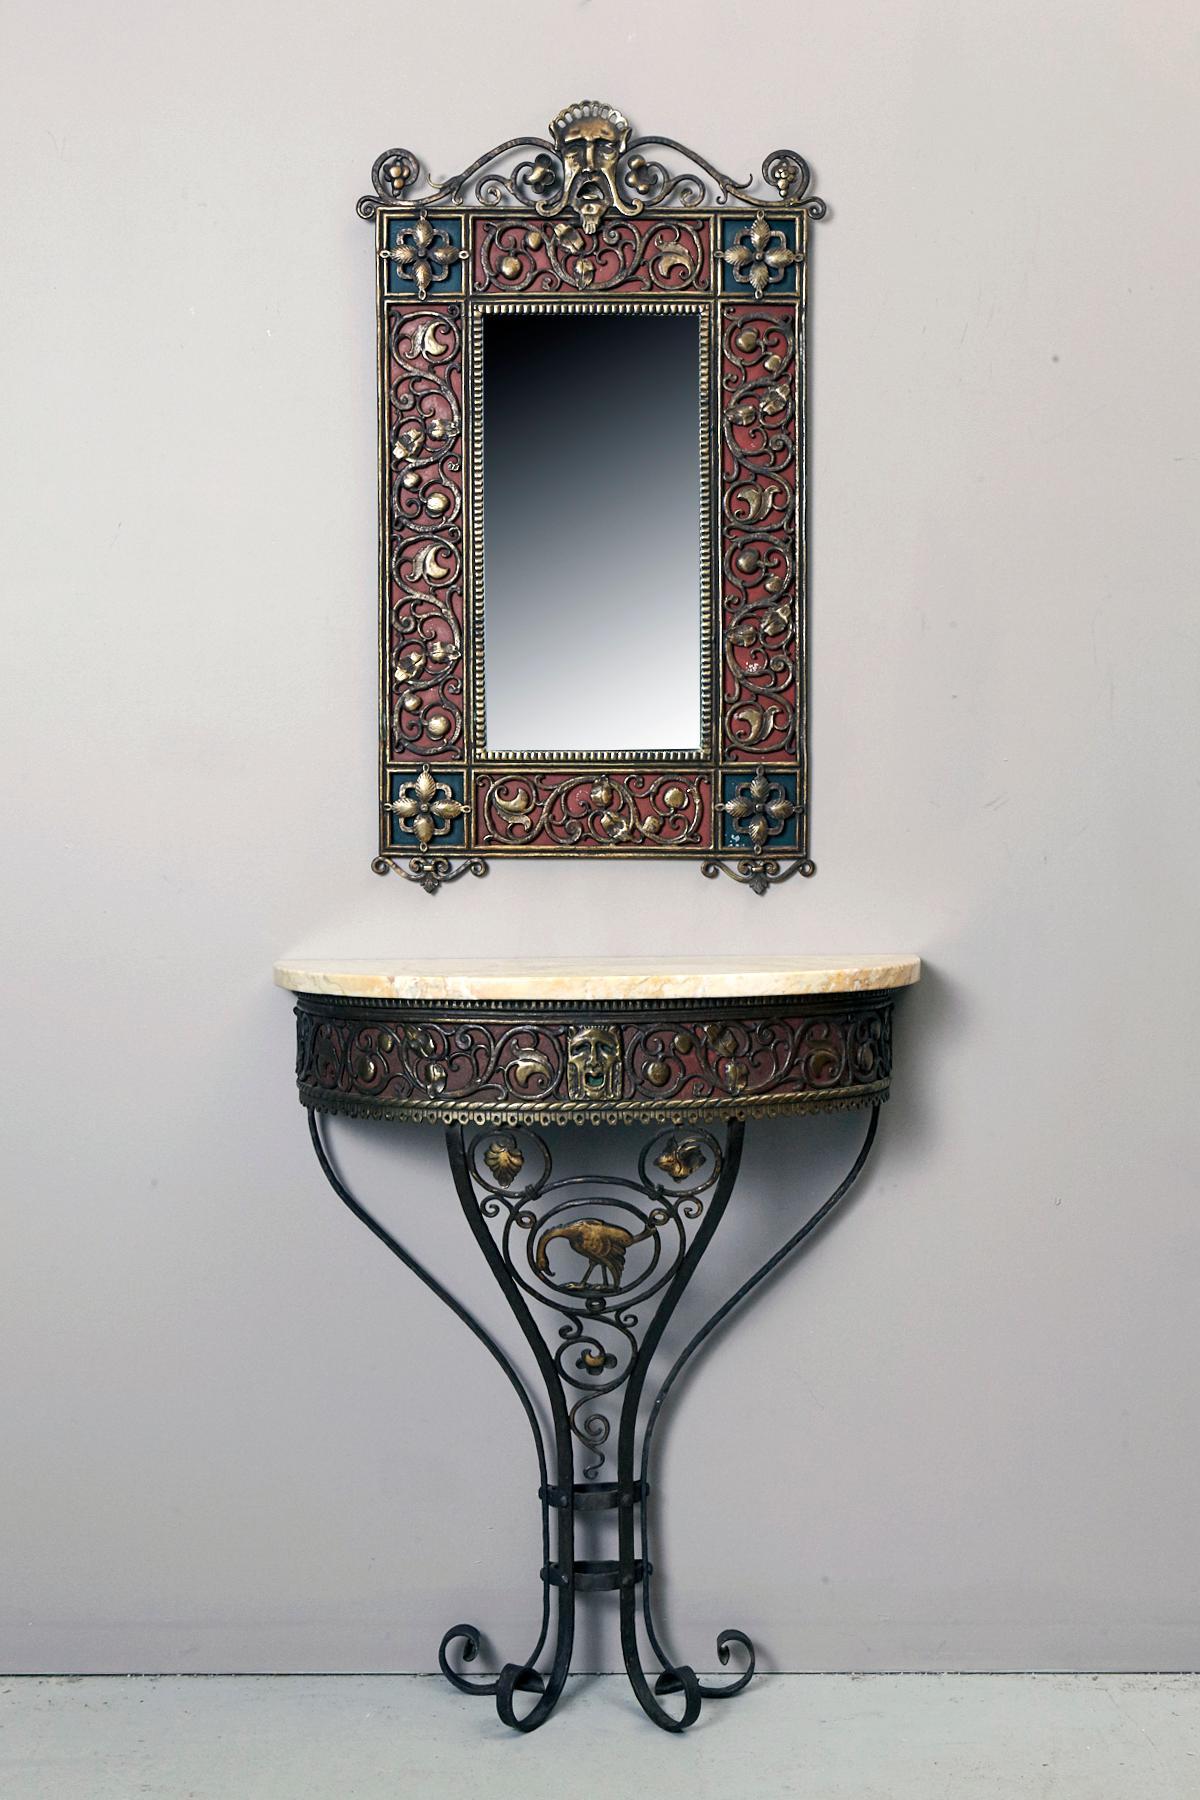 Ensemble miroir et console de style italien conçu et fabriqué par Oscar Bach, 1923.
Alliage de cuivre à patine chimique brun foncé, verre, laque, tôle étamée.

Le miroir est référencé sur le site officiel d'Oscar Bach, dans la catégorie des